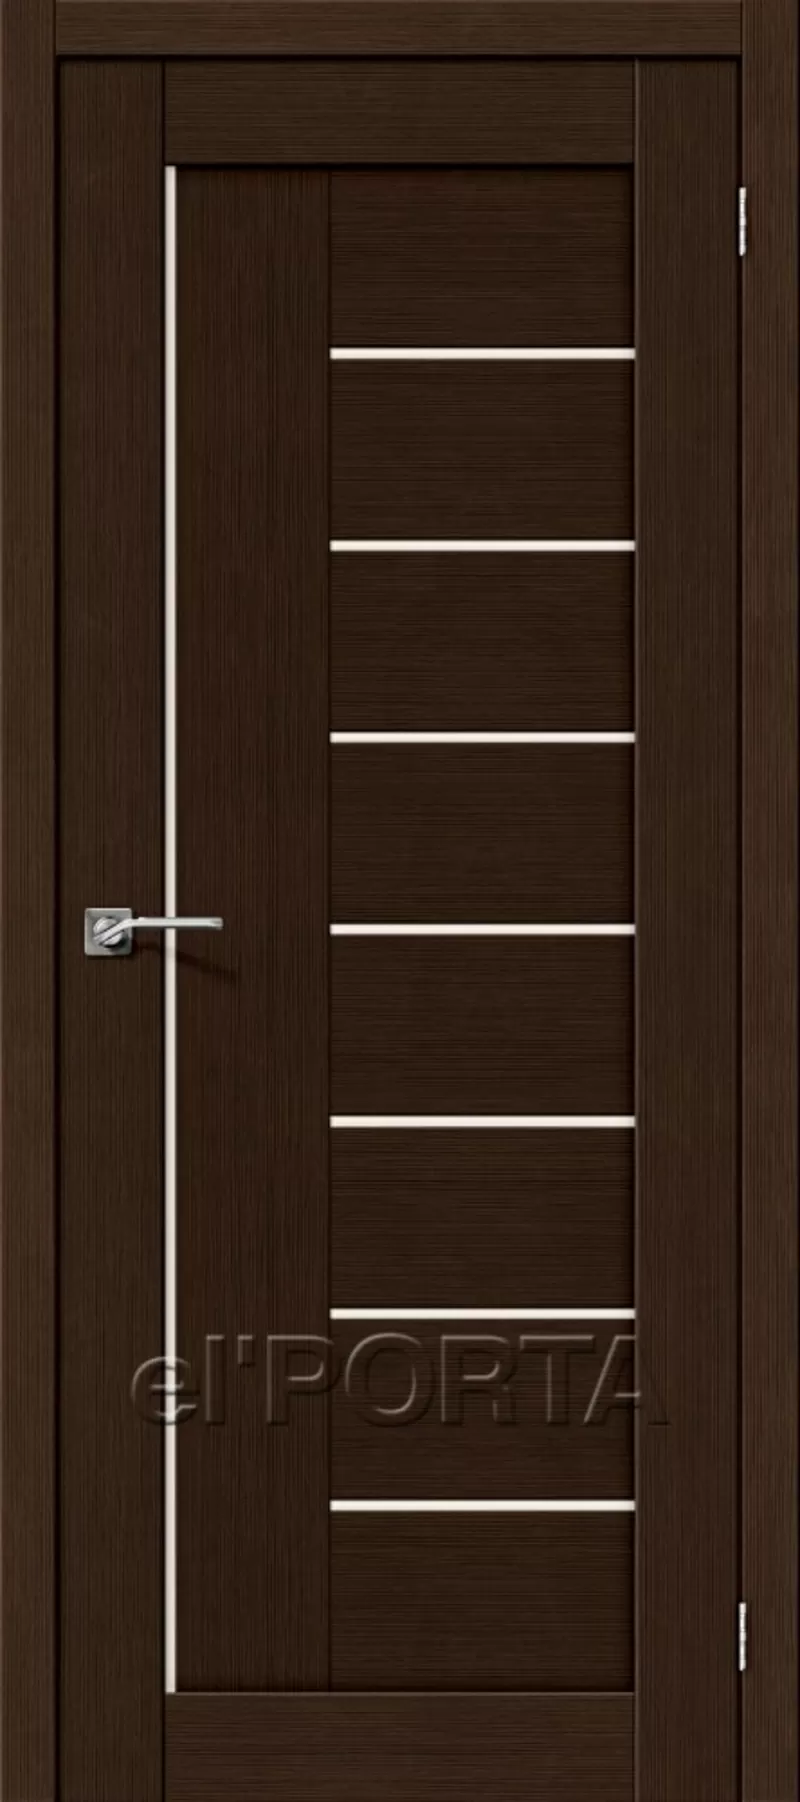 Межкомнатные двери МДФ от 80 руб за комплект. Ручки в подарок 3